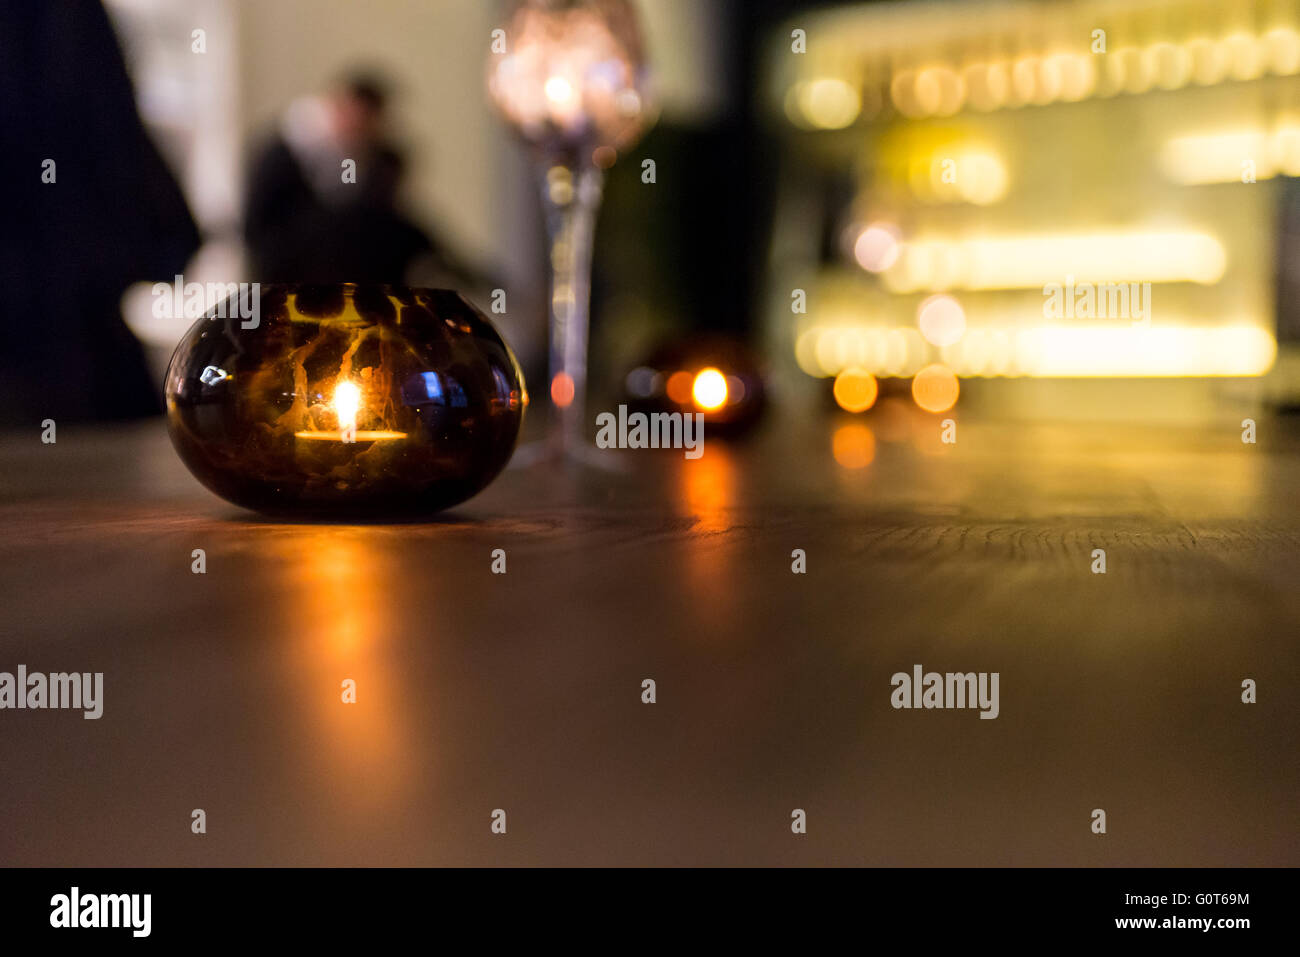 Eine Kerze leuchtet in einem runden Glas auf einem Holztisch. Stockfoto